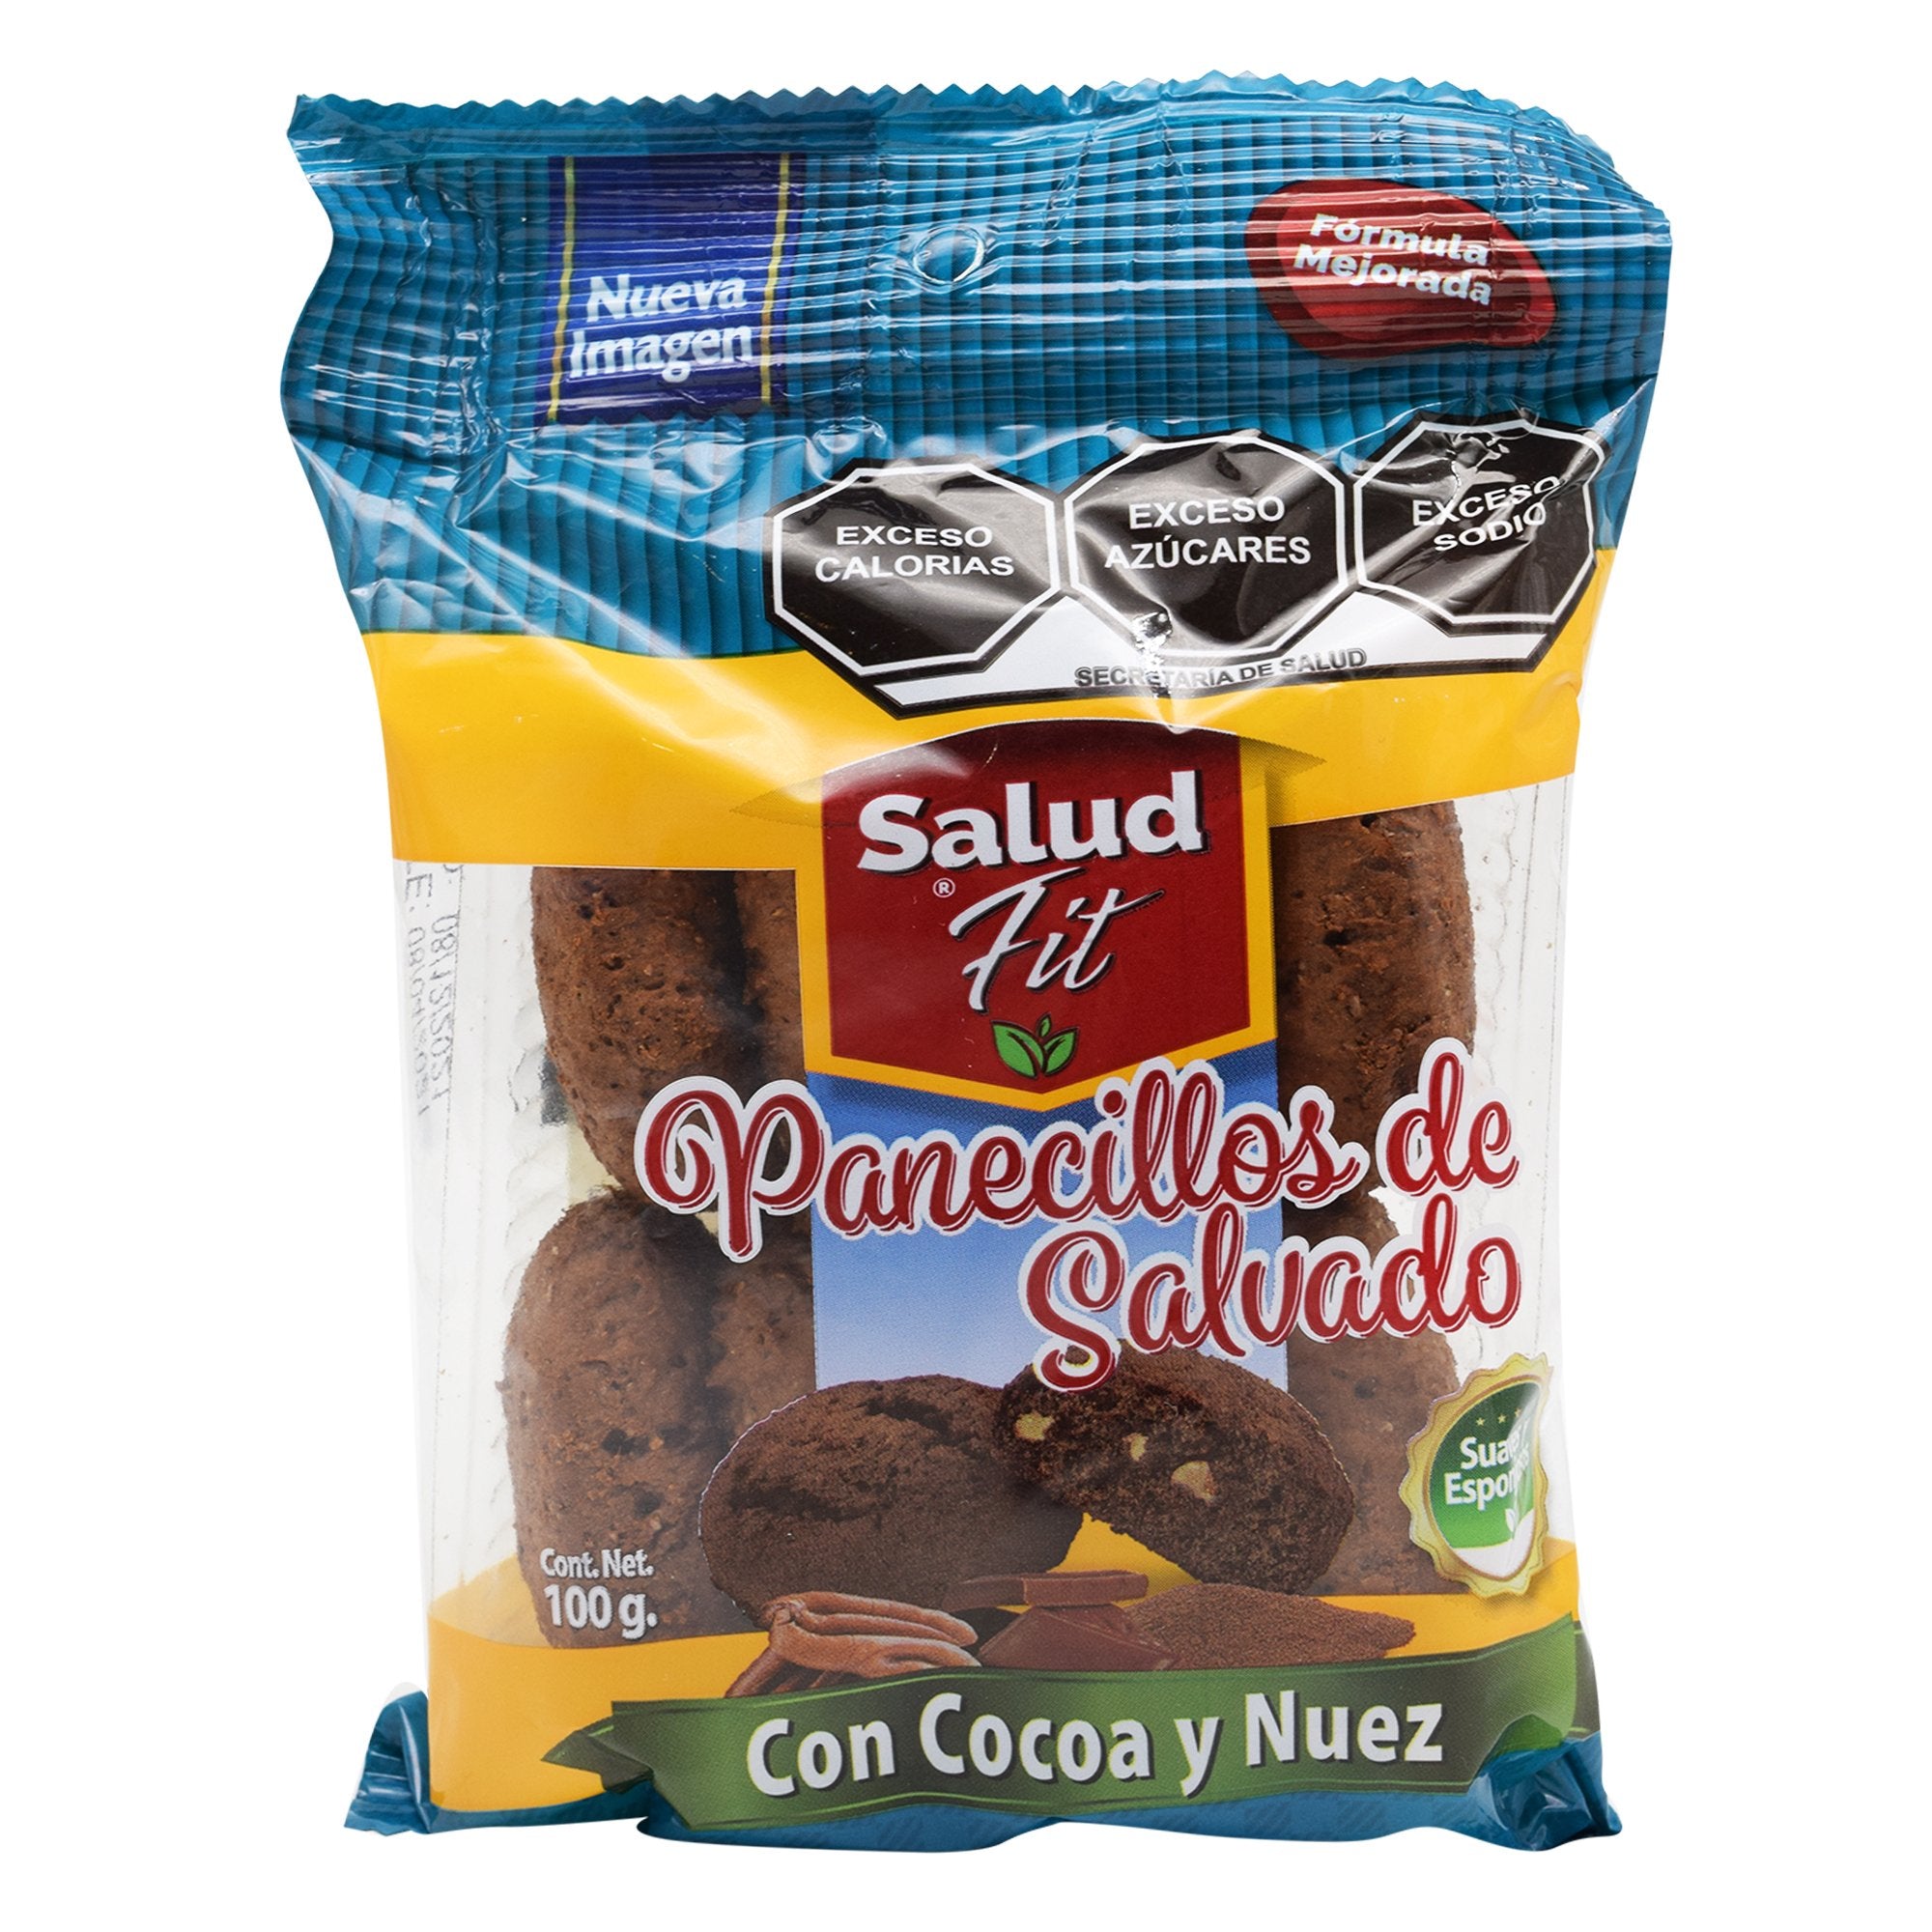 Panecillo integral sab cocoa y nuez 100 g